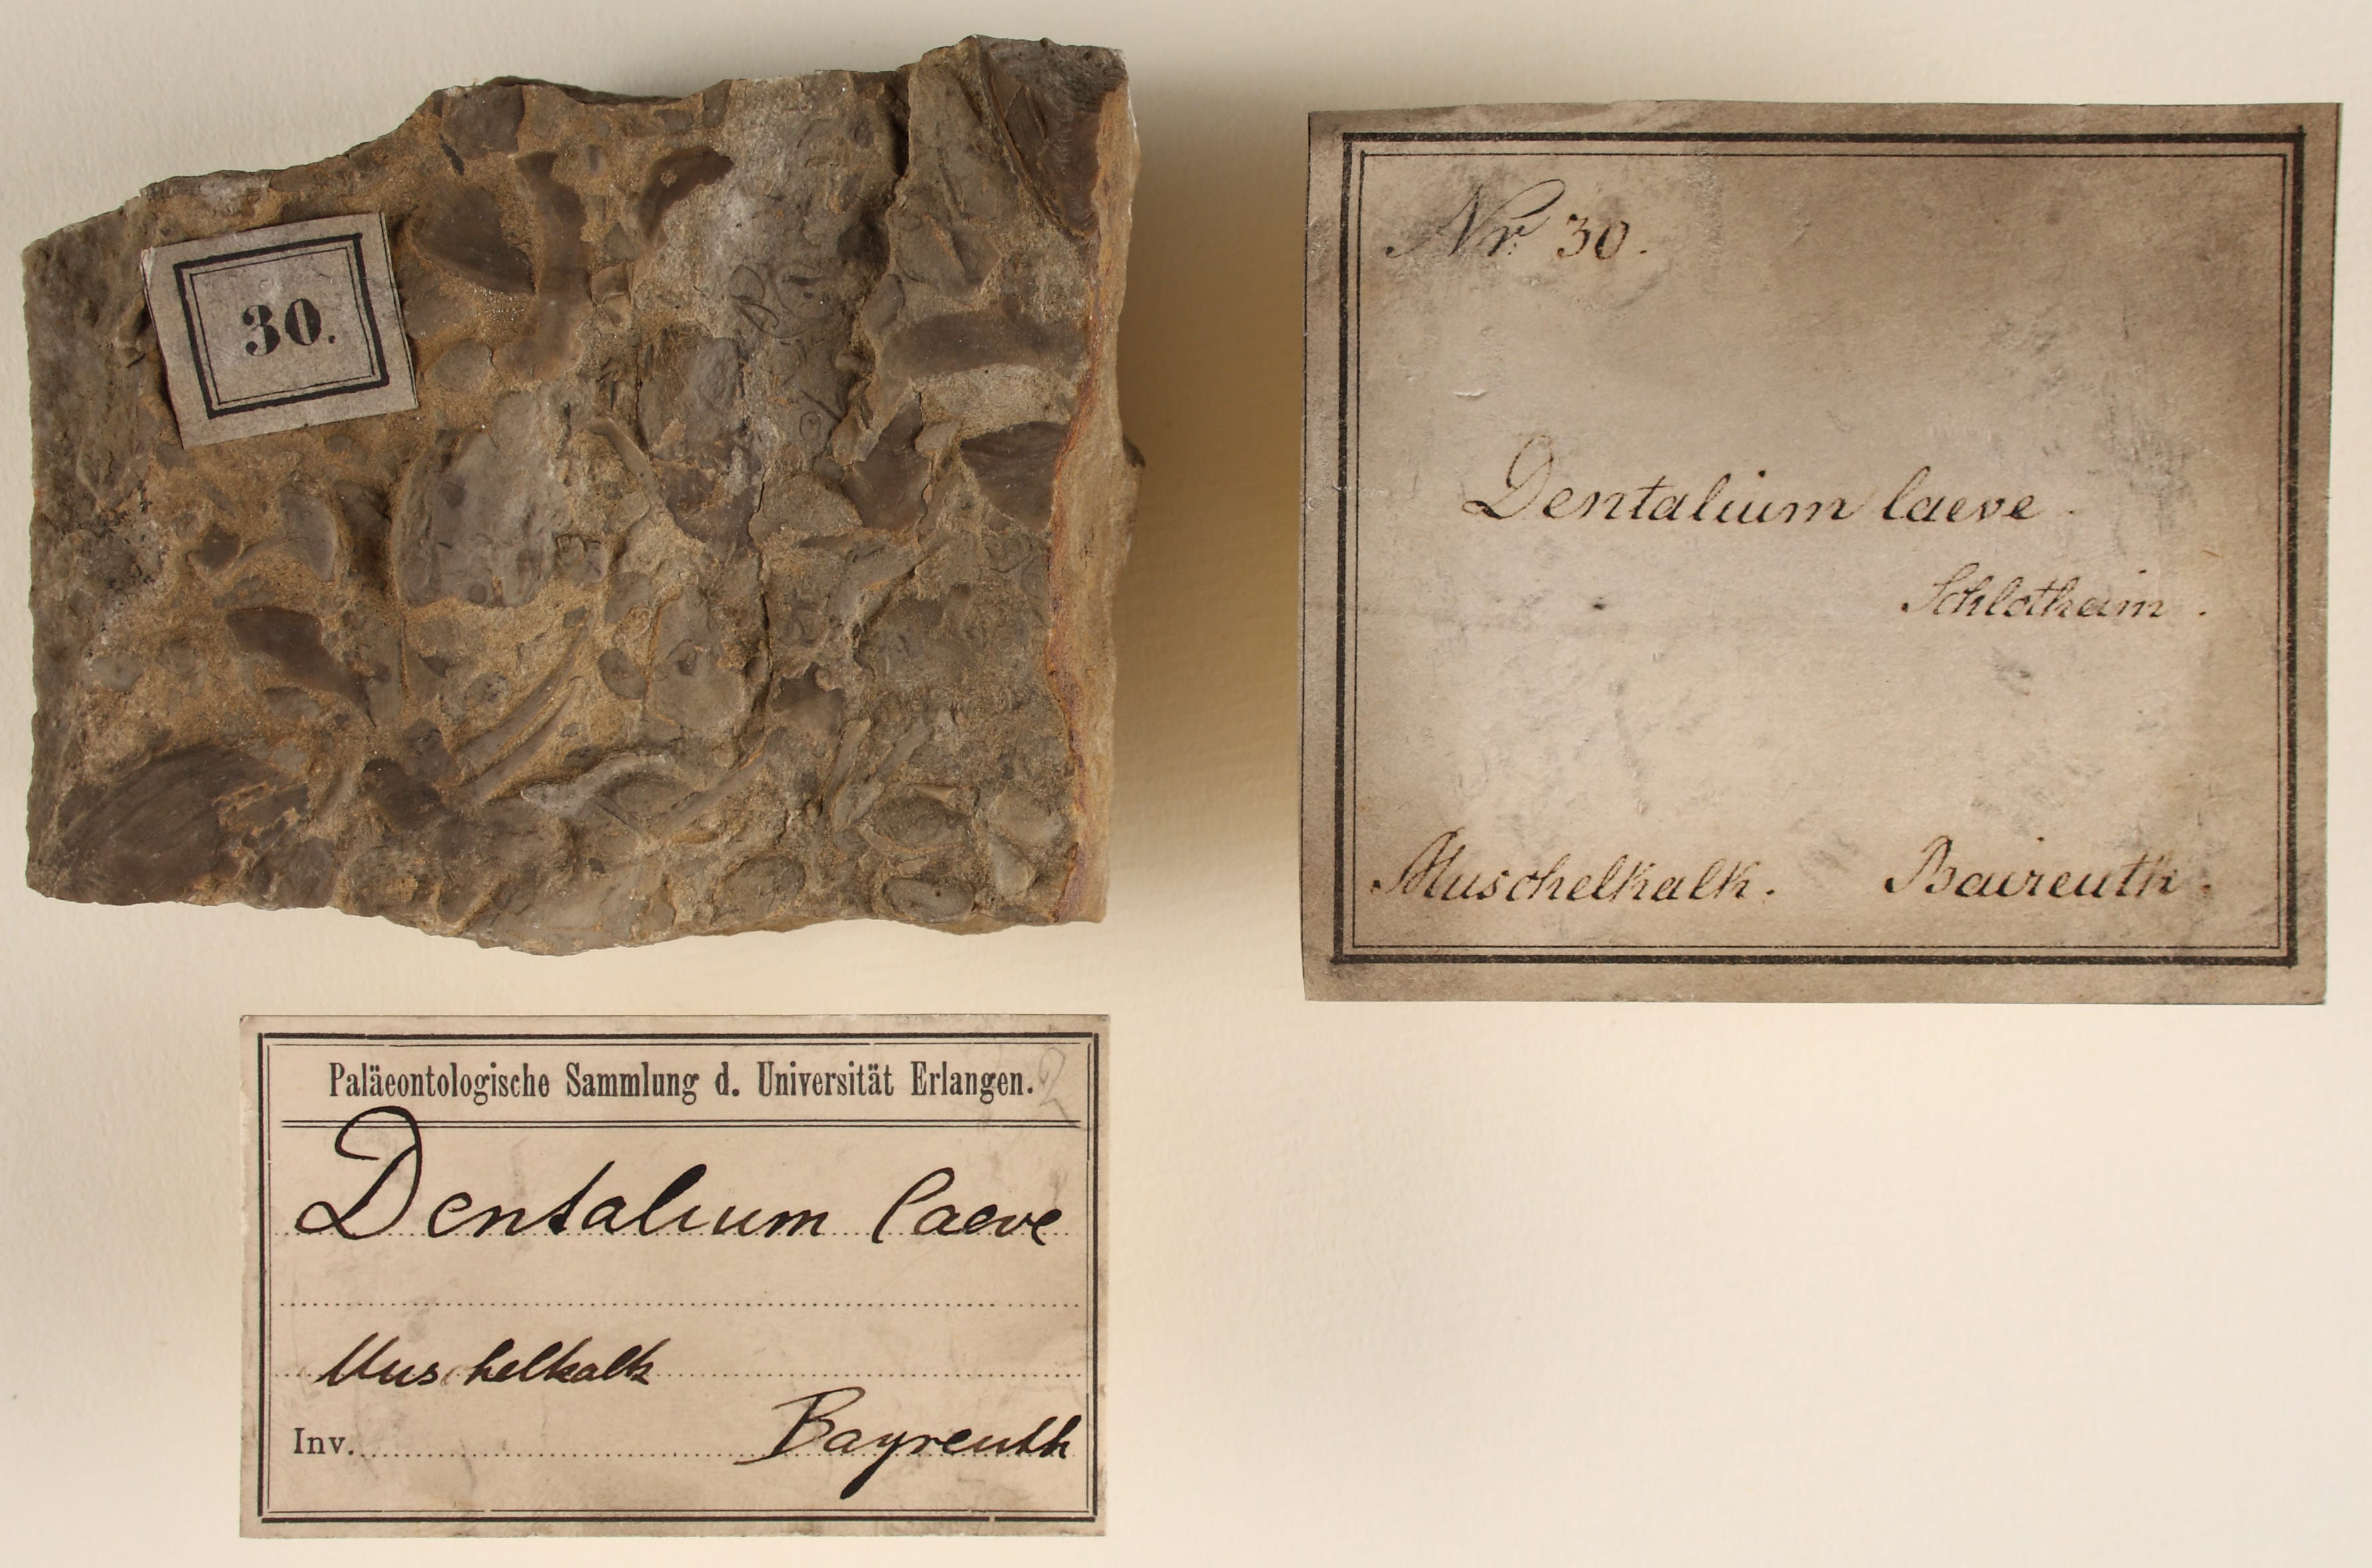 Fossil "Dentalium laeve" aus der Mineraliensammlung des Markgrafen Friedrich von Brandenburg-Bayreuth